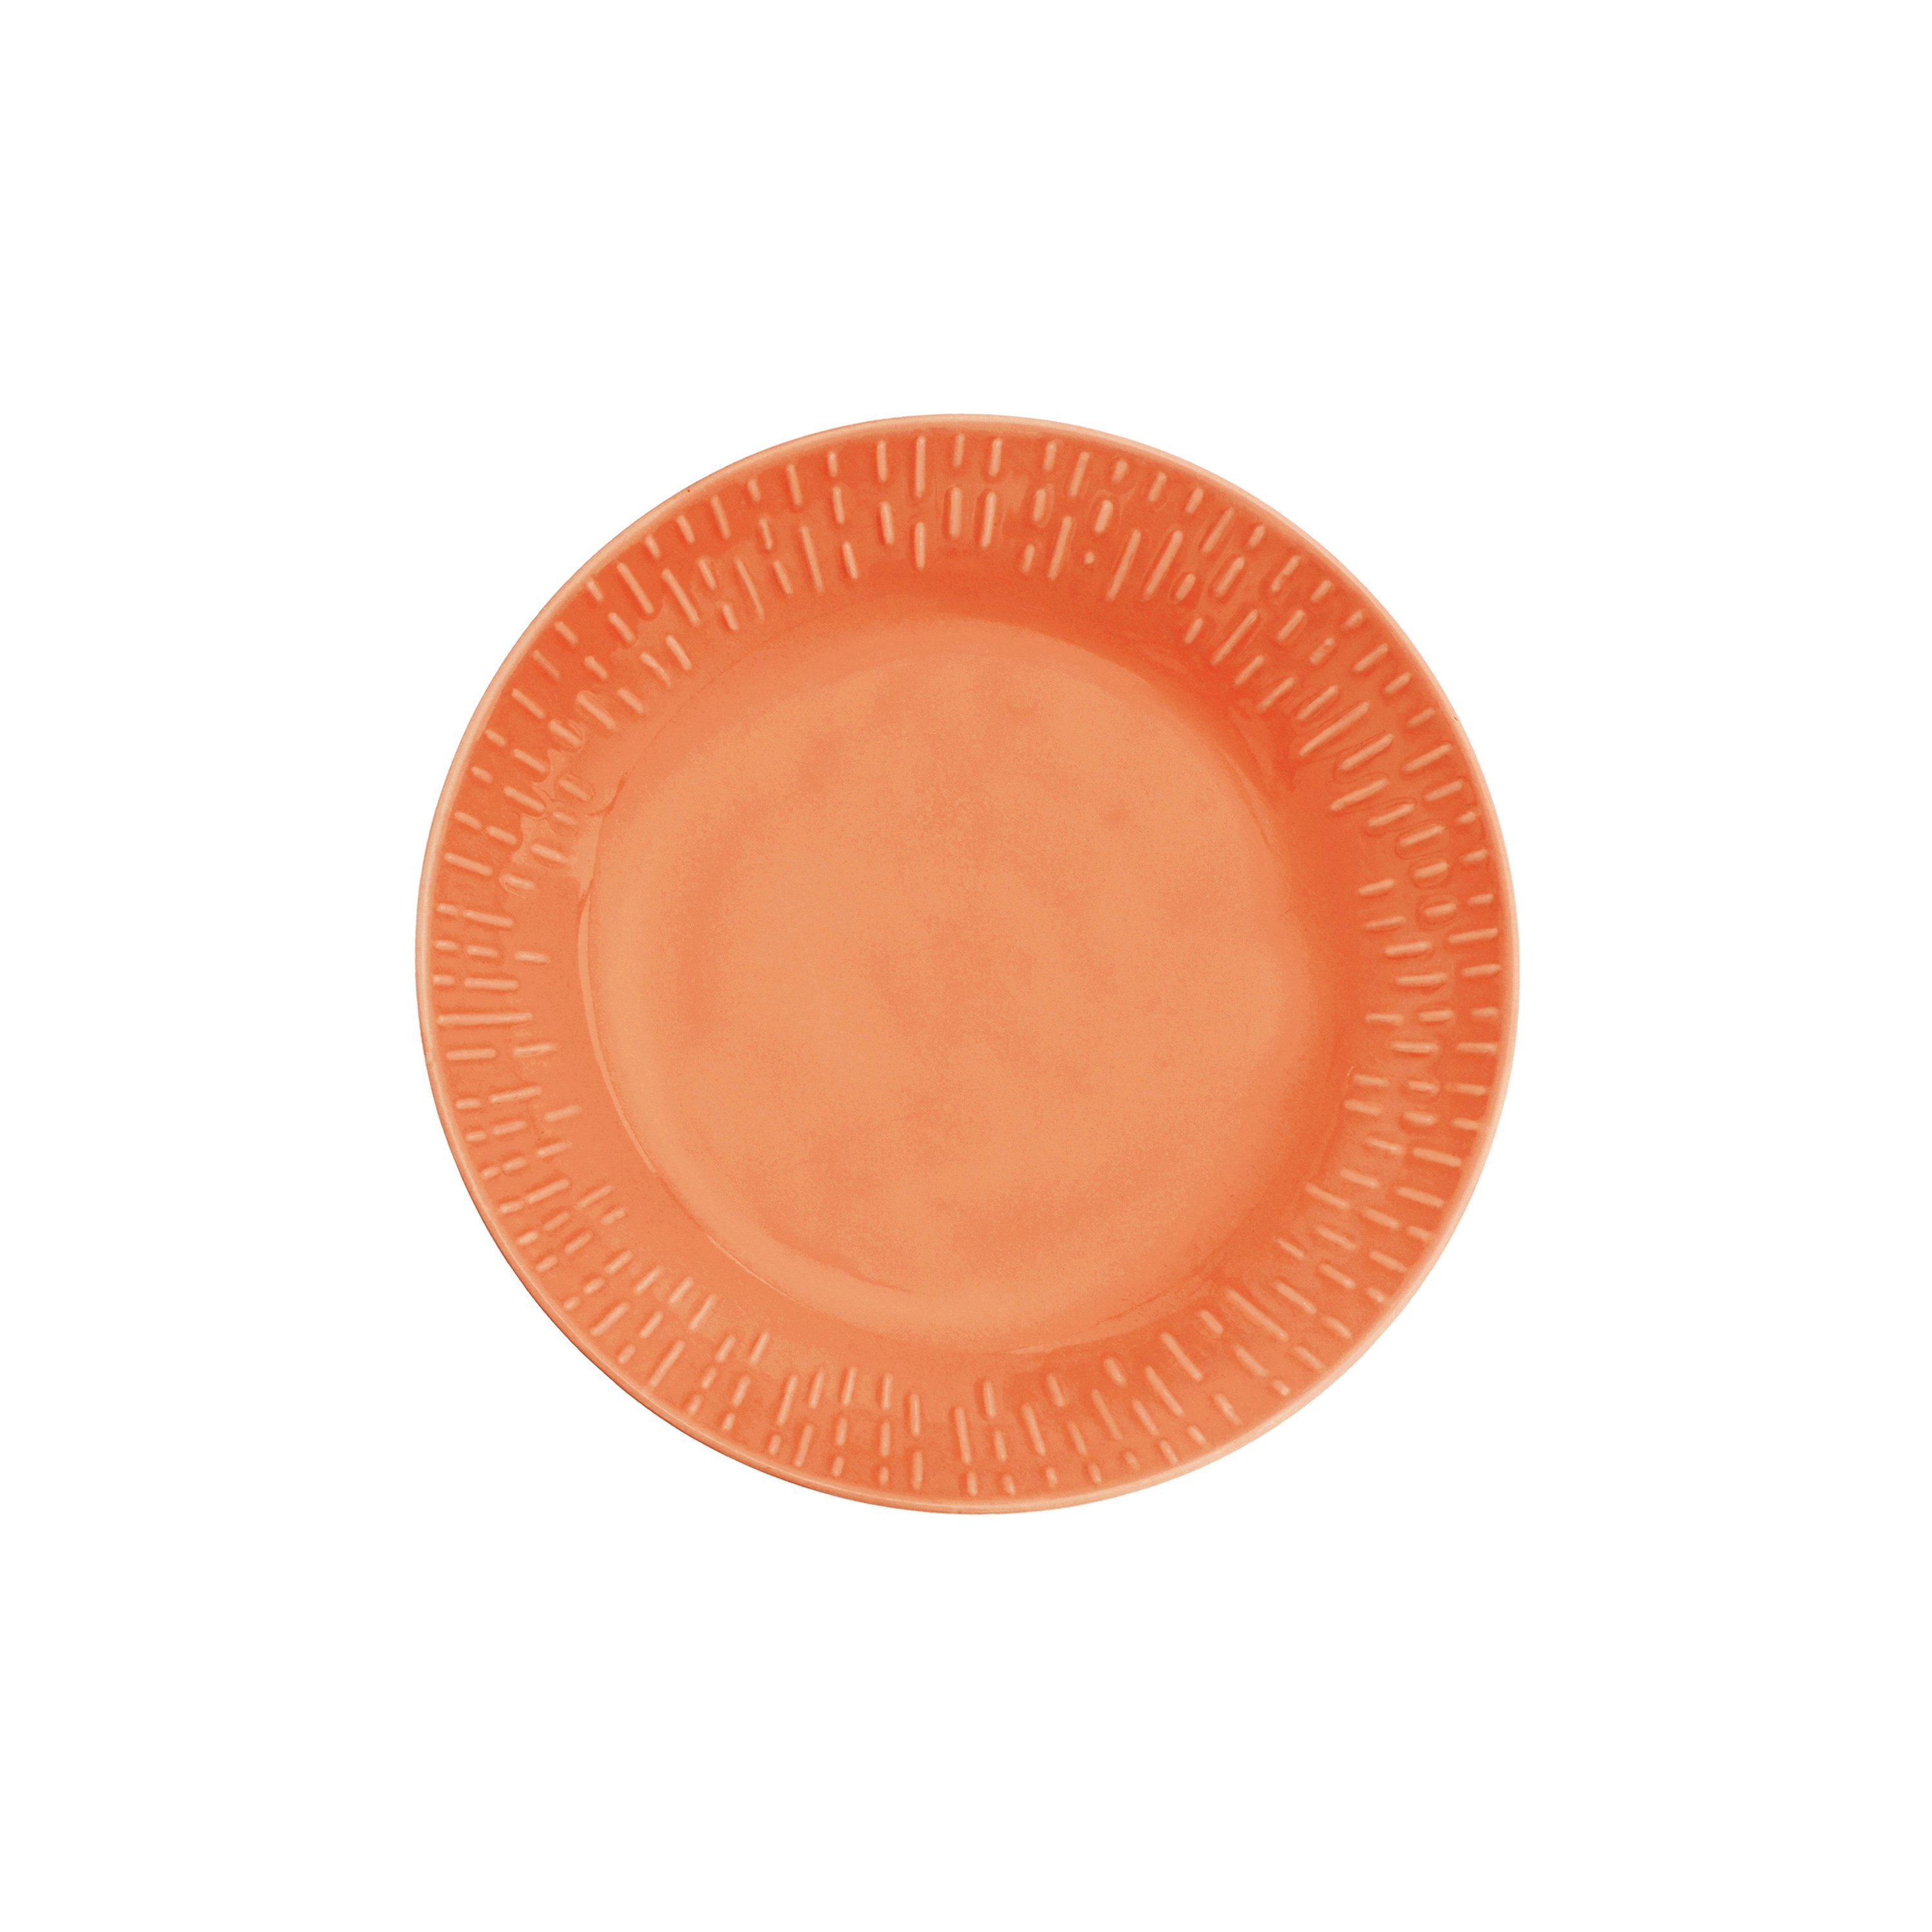 Aida - Life in Colour - Confetti - Apricot pasta plate w/relief porcelain (13324)